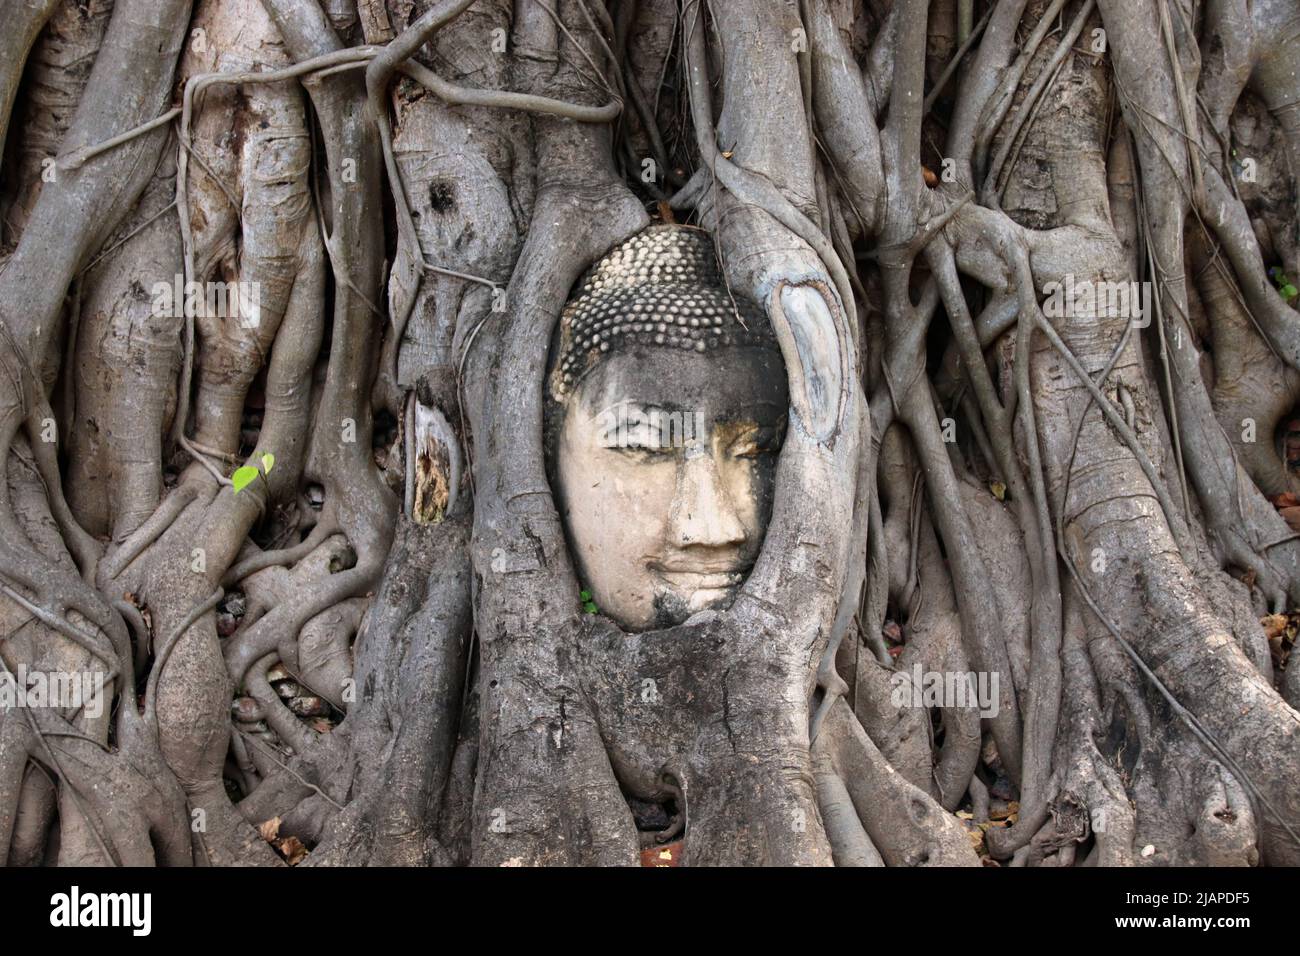 Un capo del Buddha ha ha enbeded in un albero del pipelal al tempiale di Wat Mahathat, parco storico di Ayutthaya, Ayutthaya. Provincia di Ayutthaya, Tailandia. Ficus religiosa o fico sacro è una specie di fico originaria del subcontinente indiano e dell'Indochina che appartiene alla famiglia delle Moraceae, il fico o gelso. È anche noto come albero bodhi, albero pippala, albero di peepal, albero pipeloso o albero di ashvattha (in India e Nepal). Il fico sacro è considerato un significato religioso in tre grandi religioni che hanno avuto origine nel subcontinente indiano: L'Induismo, il Buddismo e il Giainismo. Foto Stock